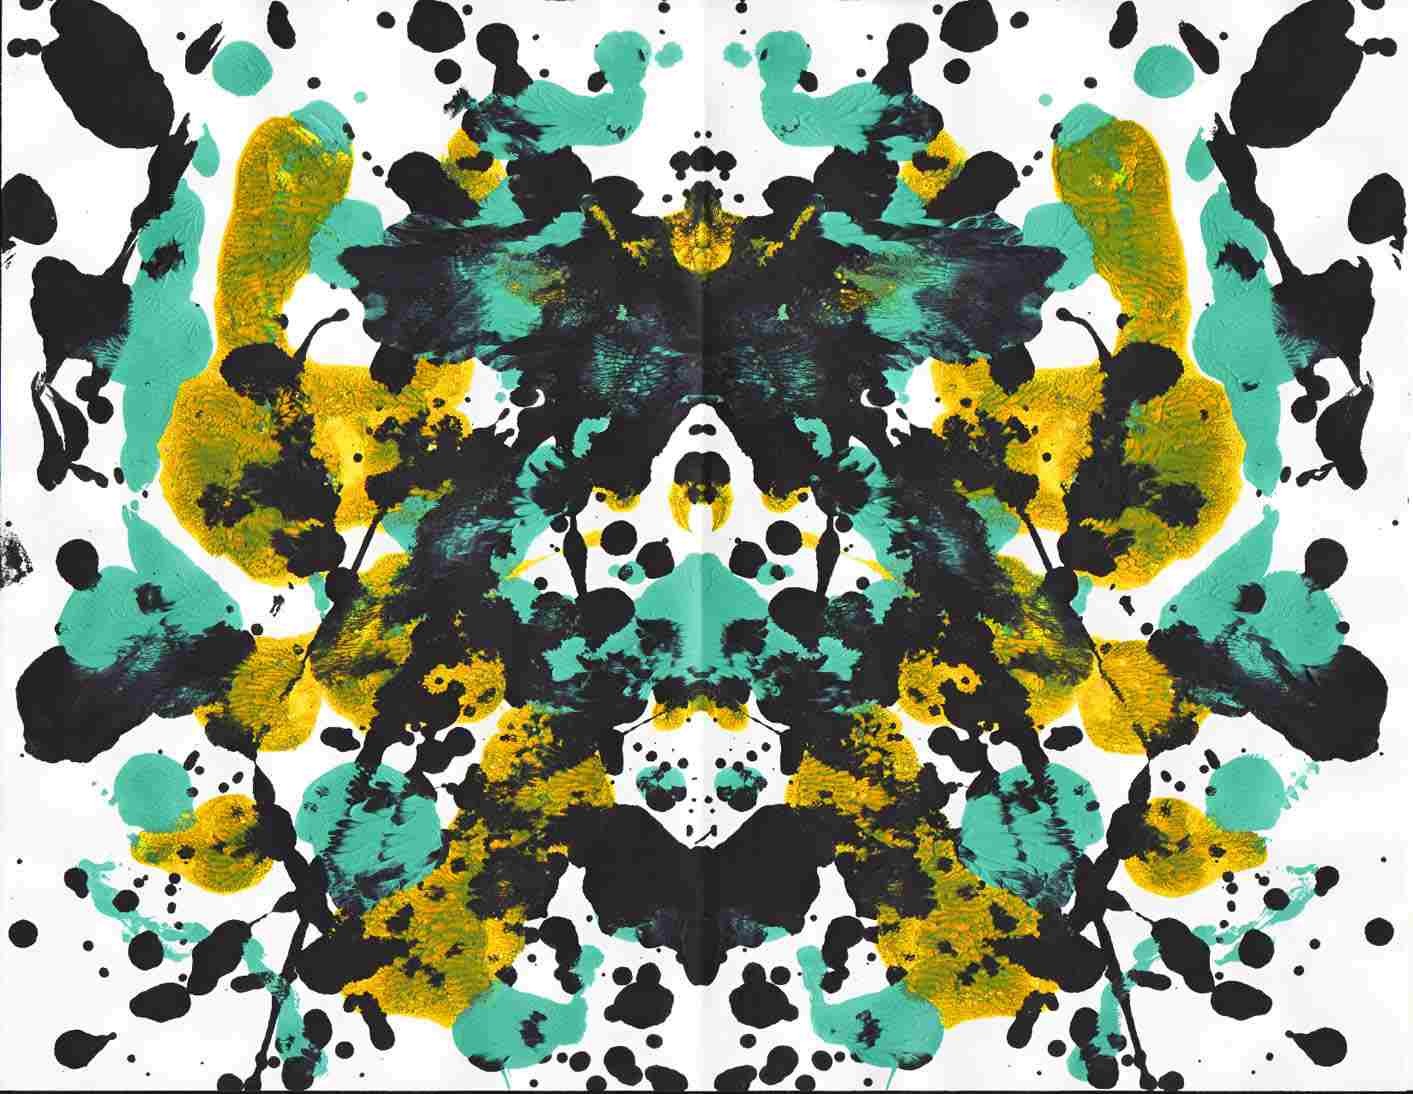 General 1413x1094 ink paint splatter symmetry Rorschach test